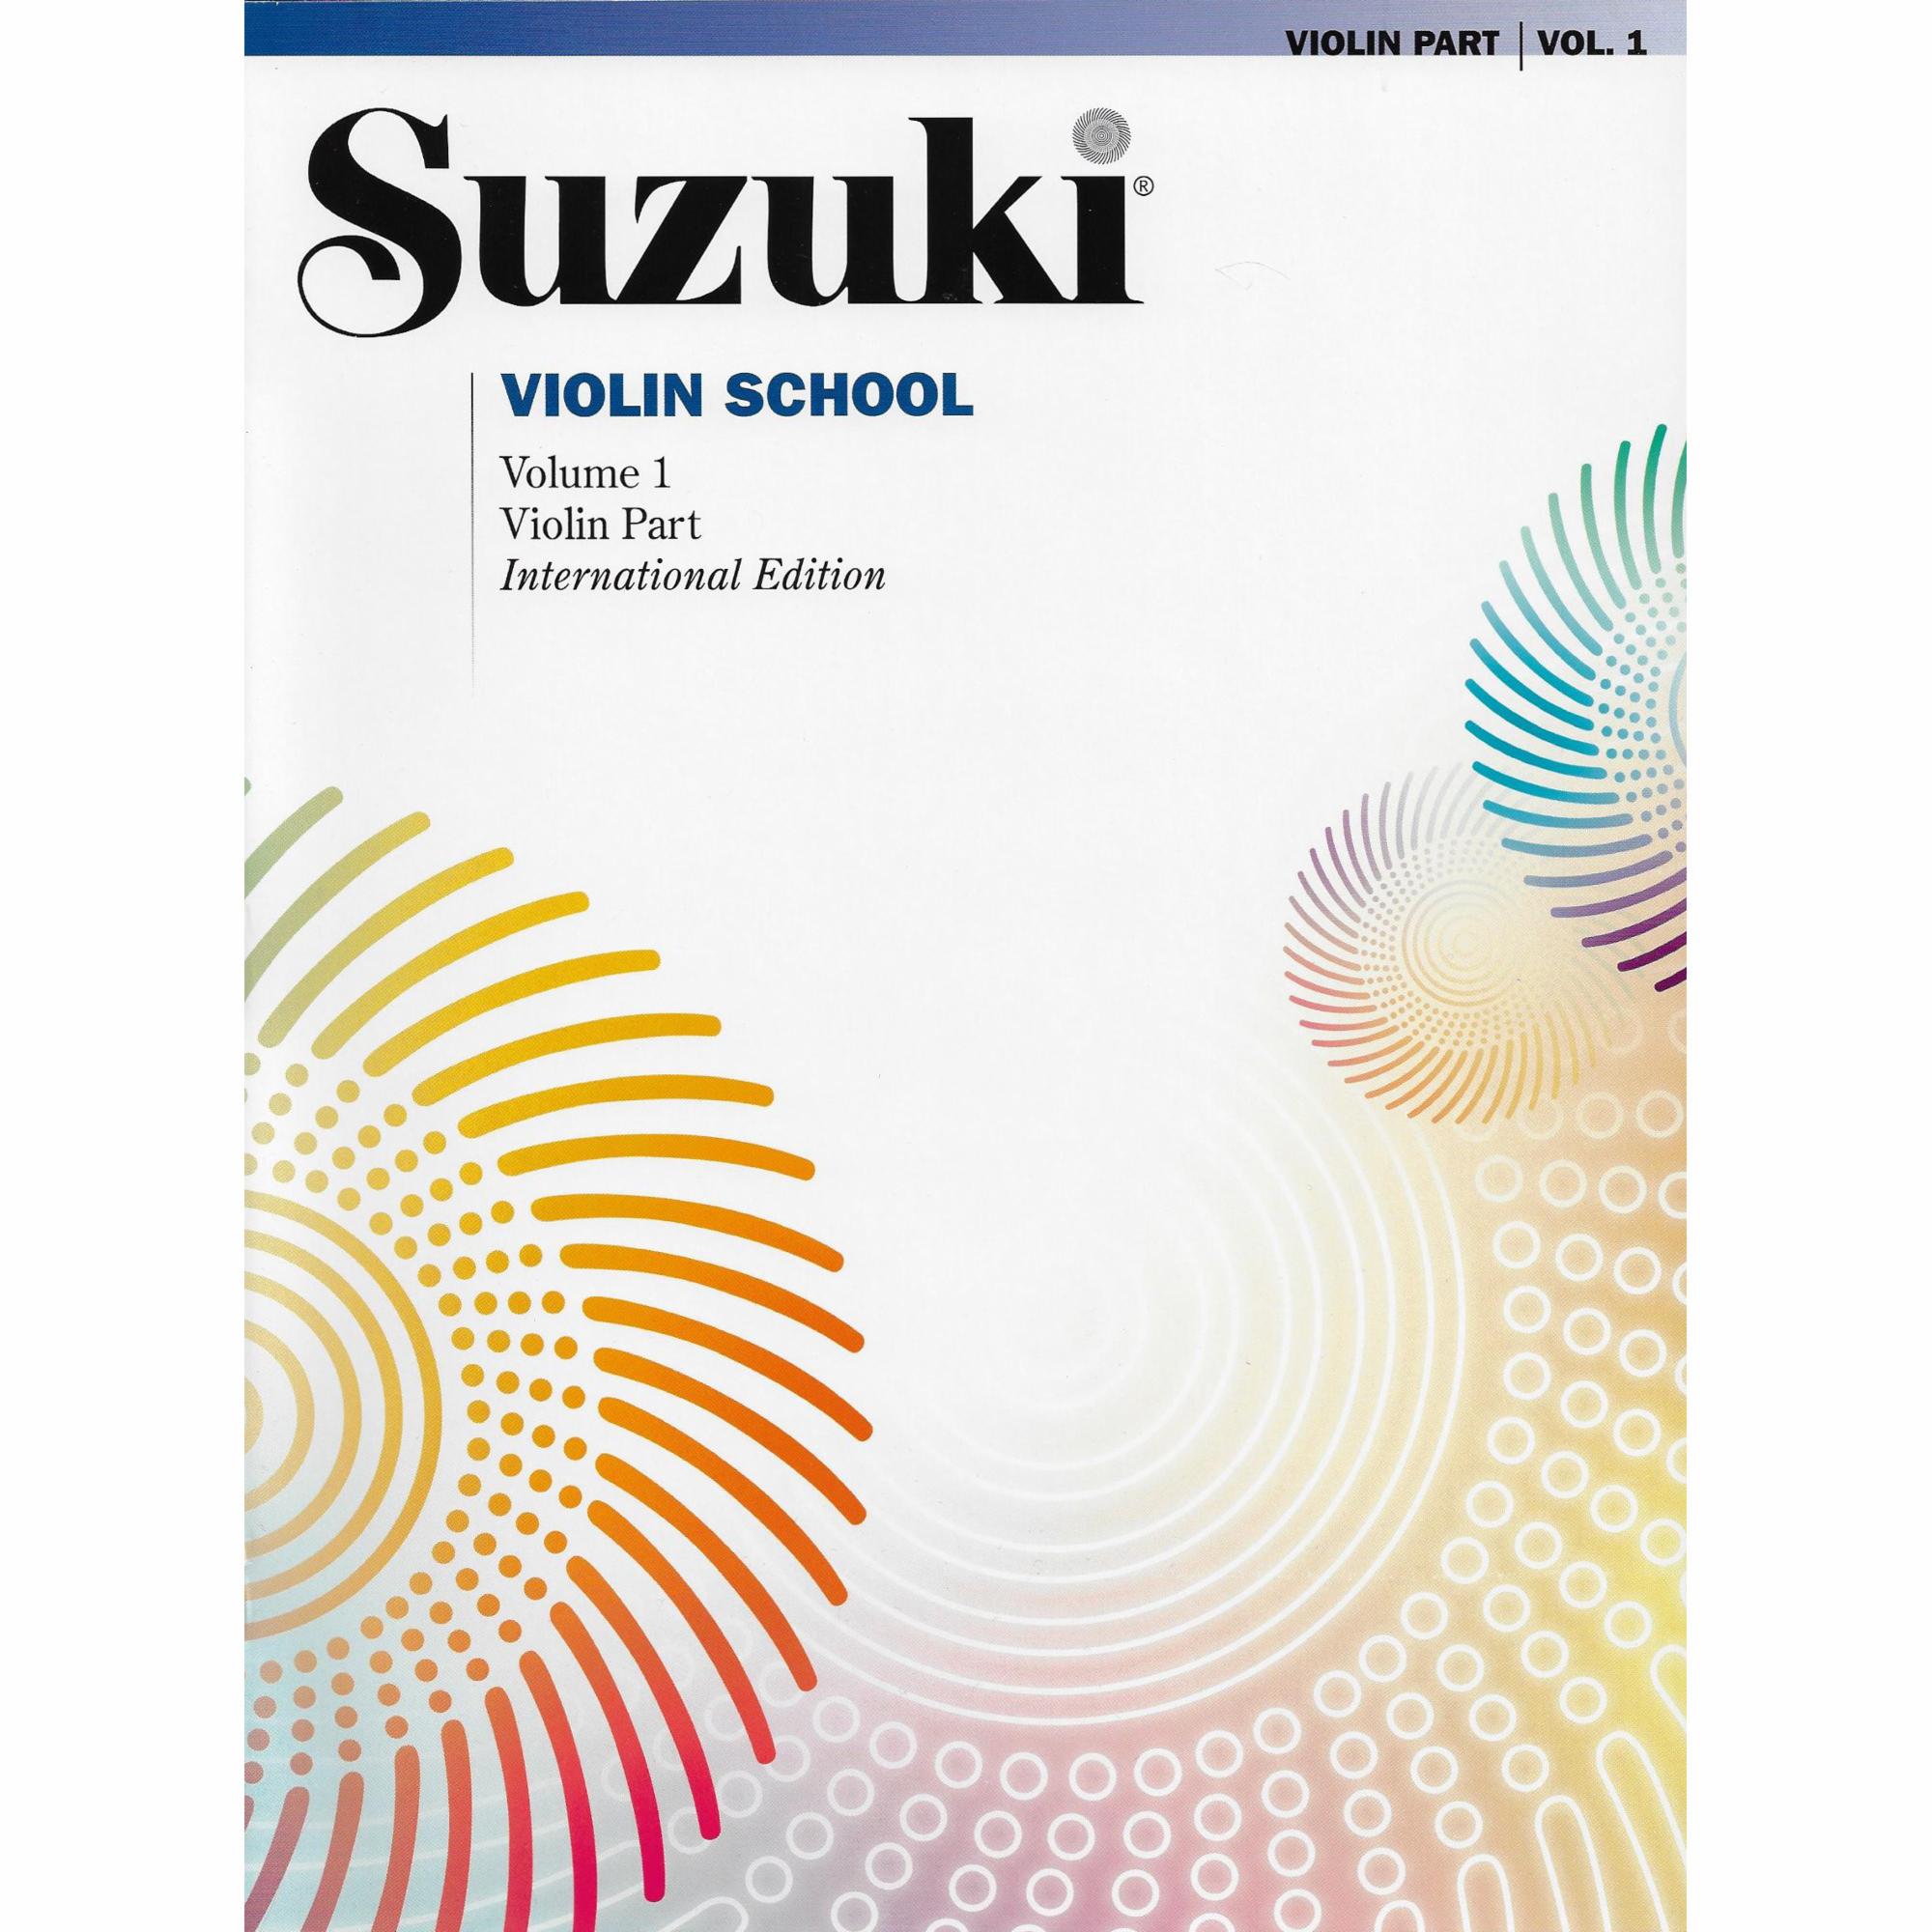 Suzuki Violin School: Violin Parts